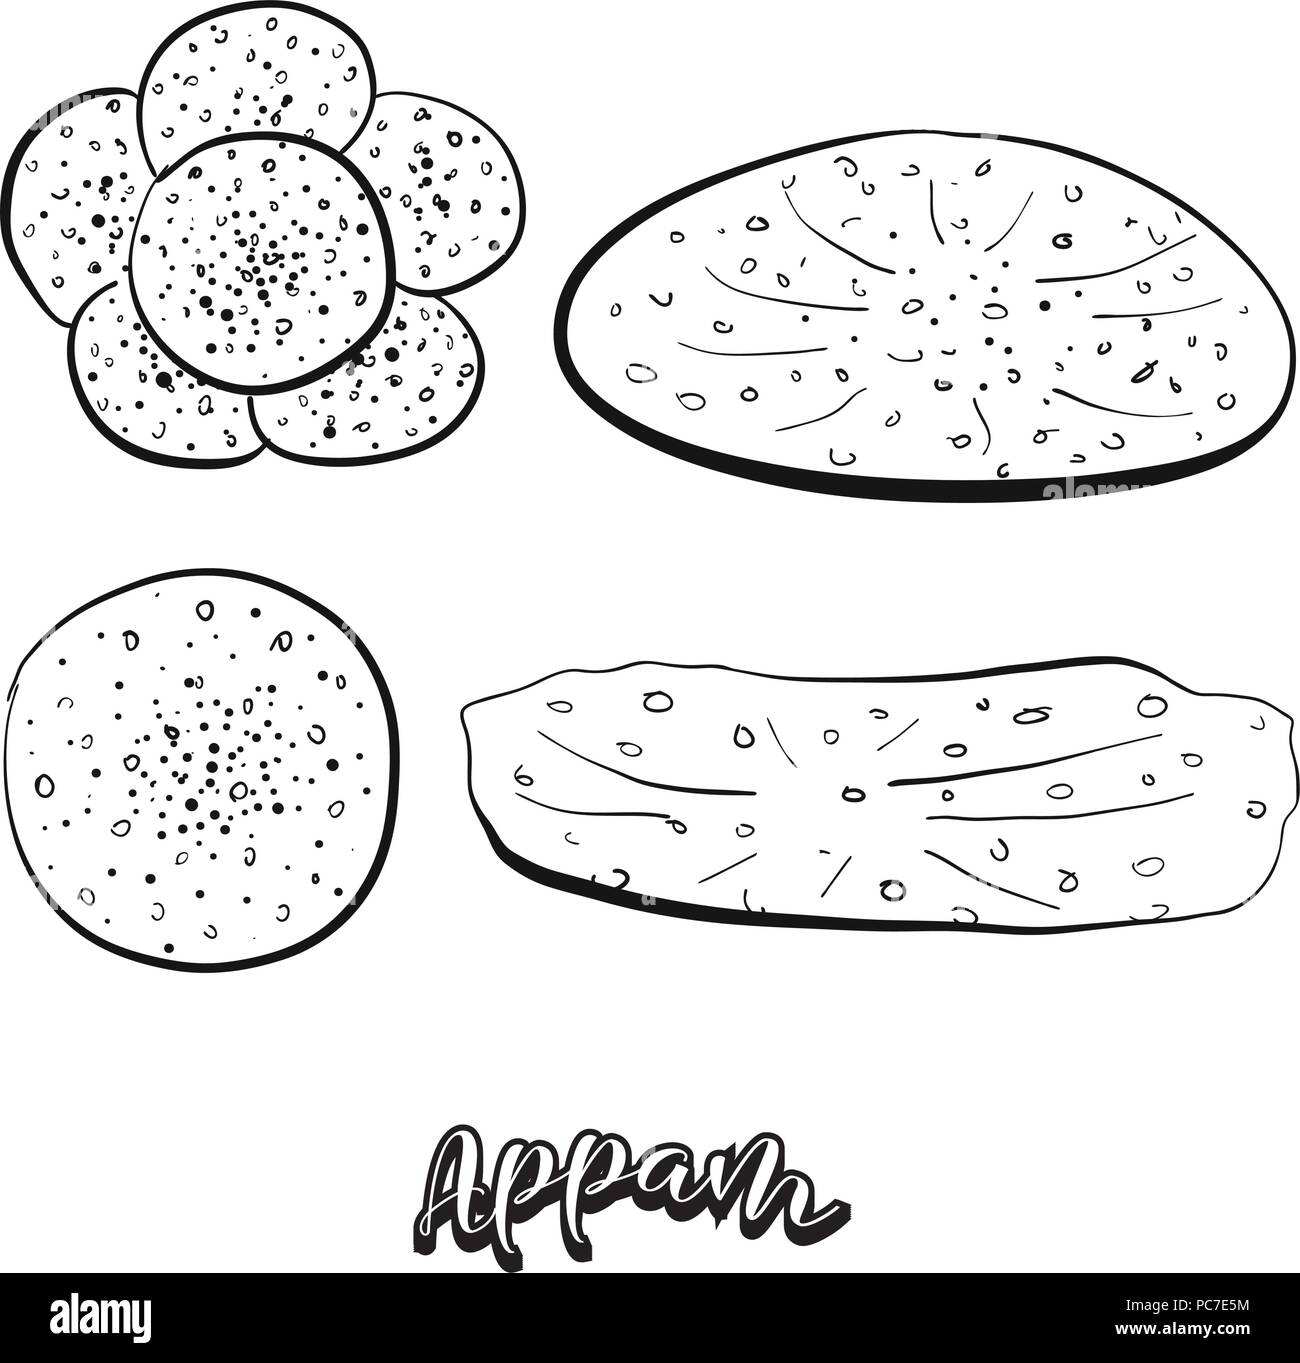 Hand gezeichnete Skizze von appam Essen. Vektor Zeichnung ist sehr unterschiedlich, in der Regel in Indien, Kerala, Sri Lanka. Brot Abbildung Serie. Stock Vektor